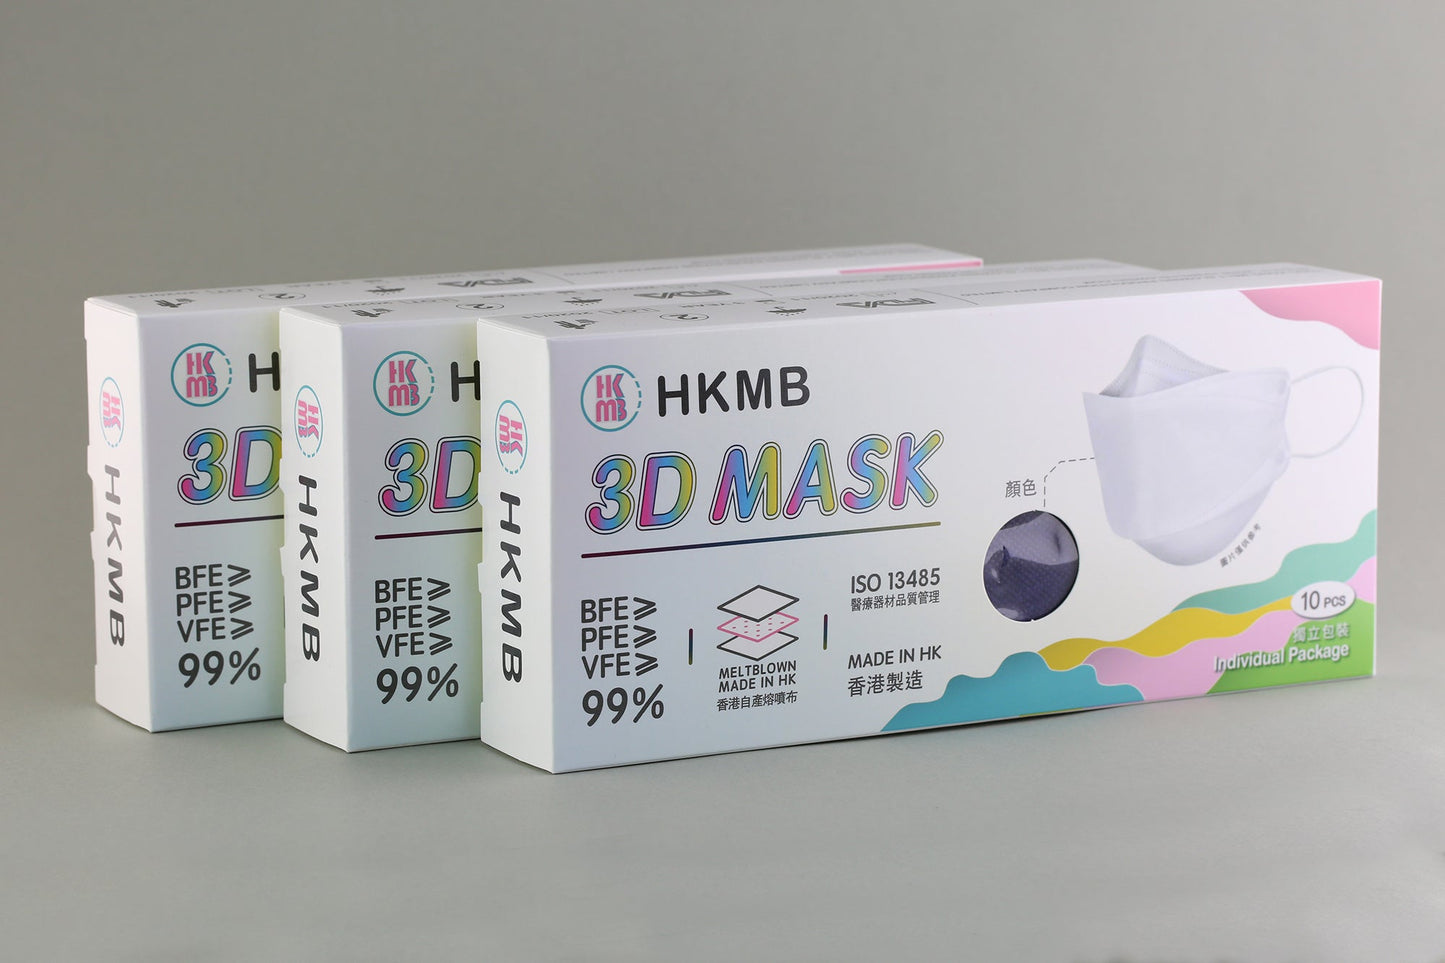 【現貨】Stylish HKMB (10pcs) 3D masks【Made in Hong Kong】